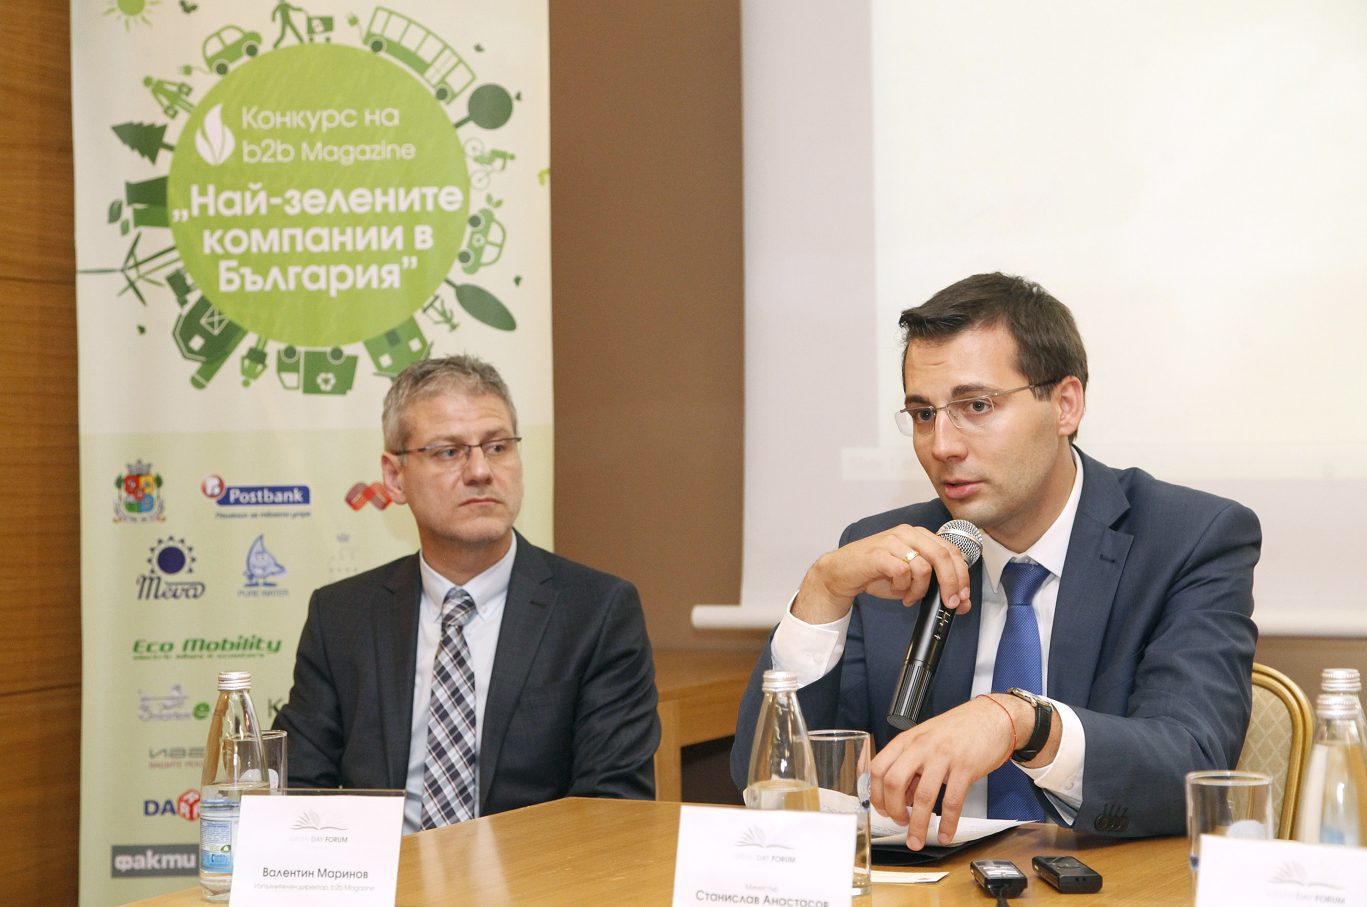 Кои са „Най-зелените компании в България” за 2013 г? [3/3]